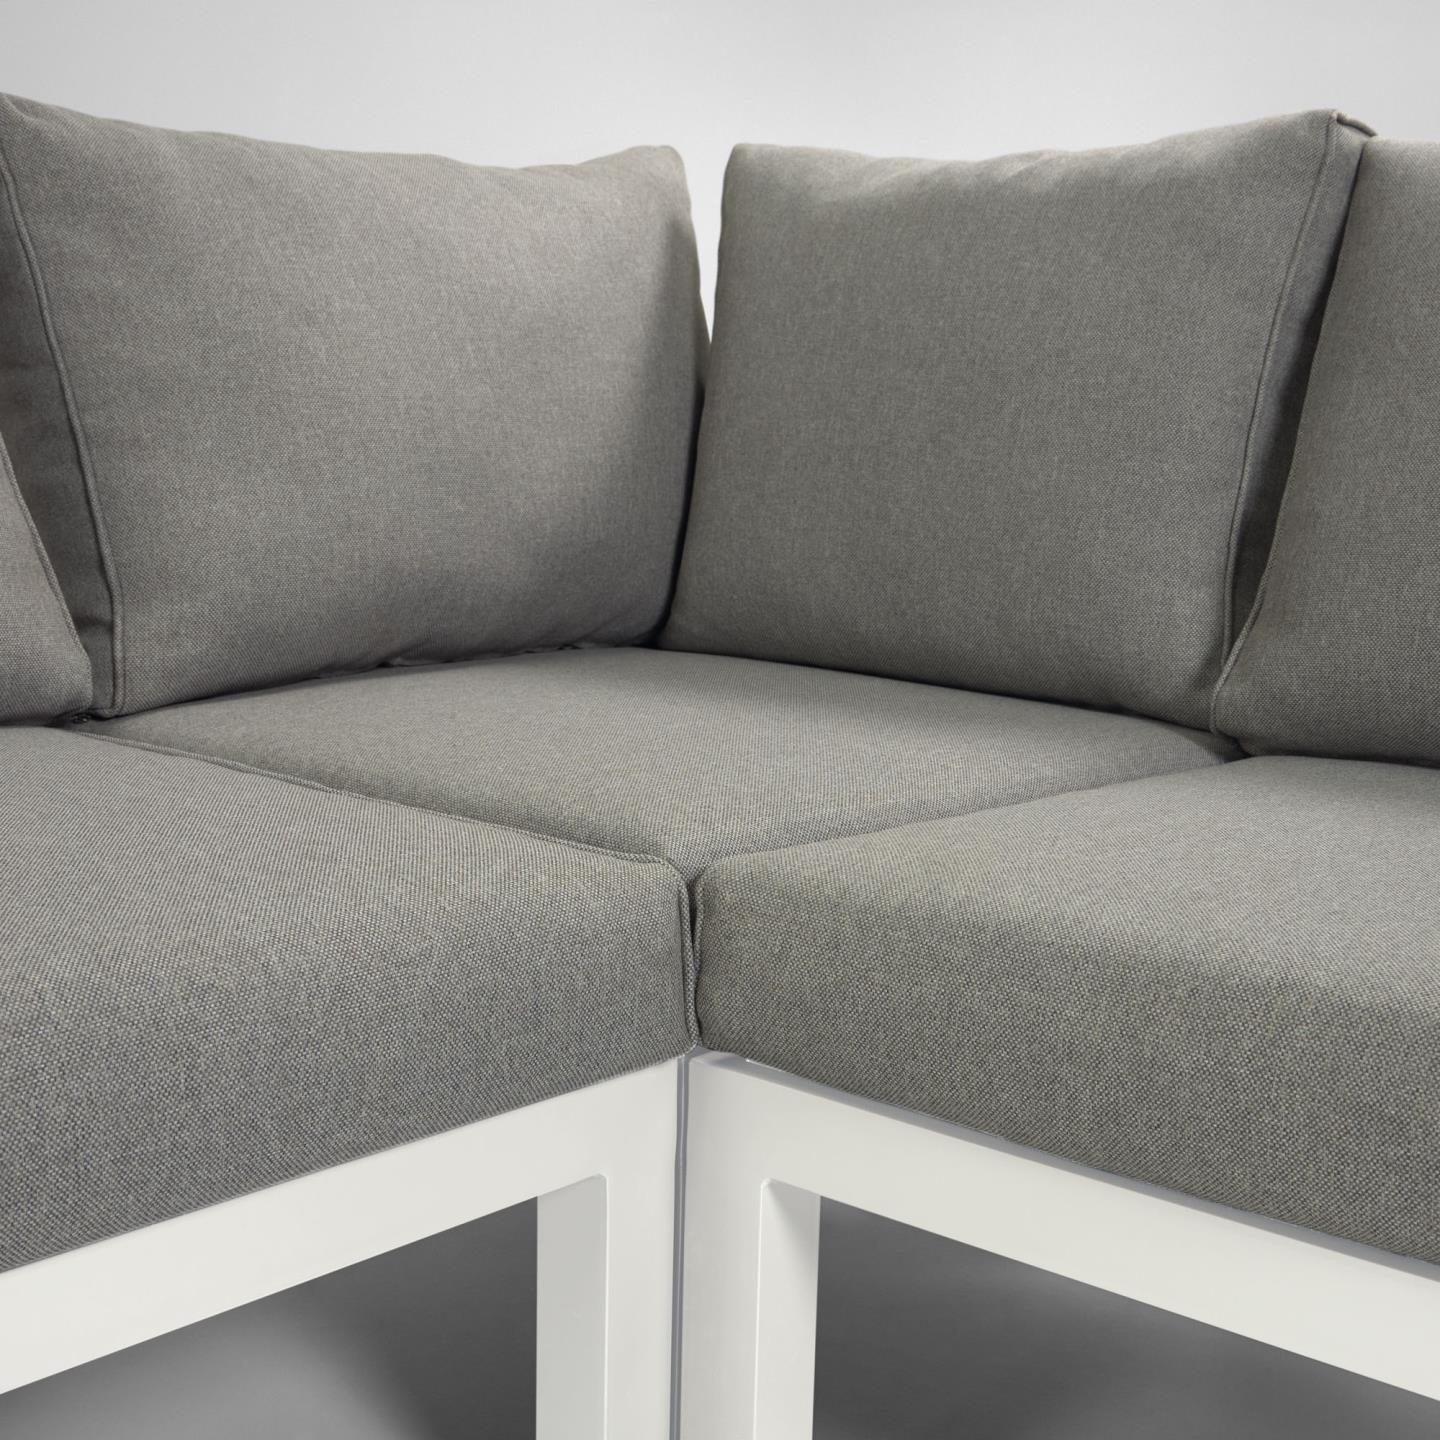 La Forma (ex Julia Grup) Модульный 5-местный угловой диван и стол Duka из белого алюминия